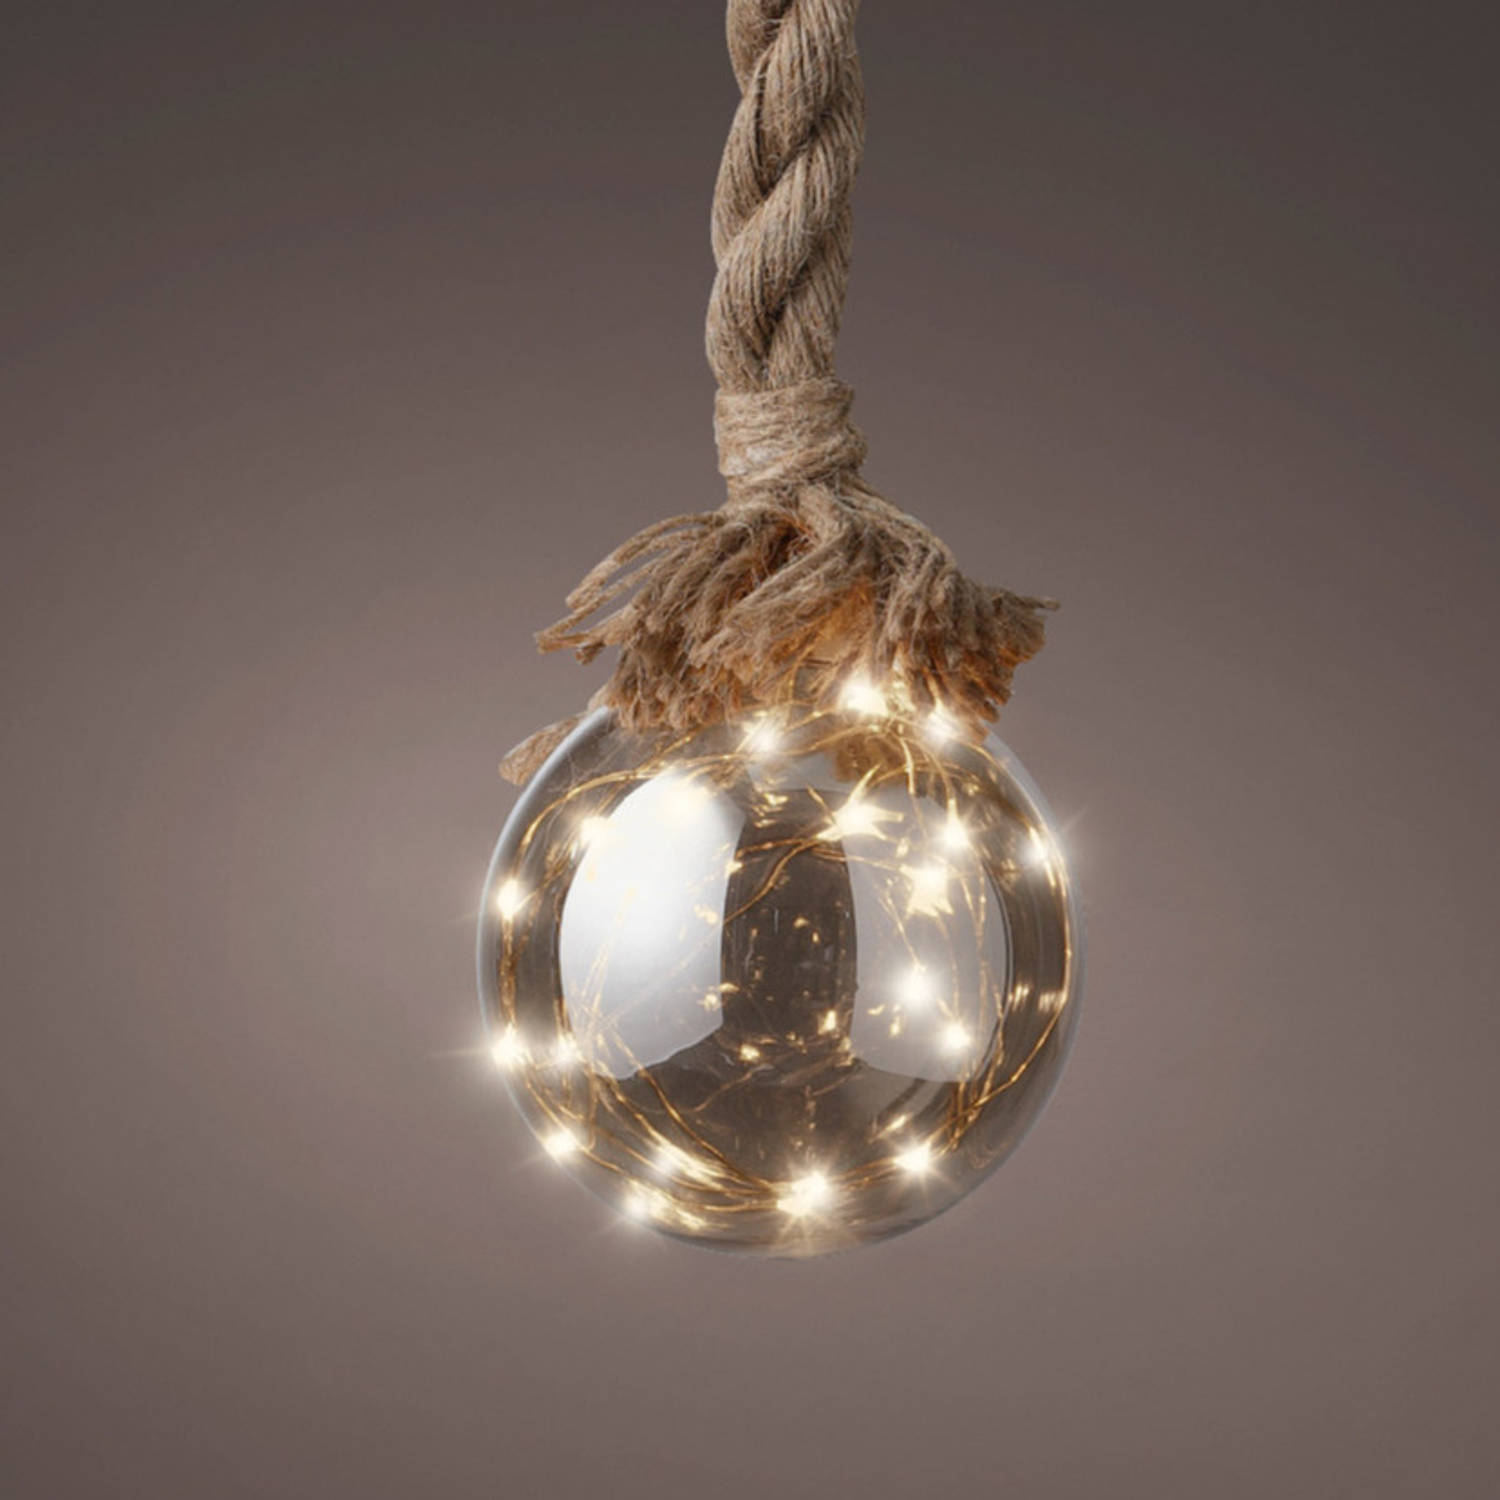 2x stuks verlichte glazen kerstballen aan touw met 15 lampjes zilver/warm wit 10 cm diameter - kerstverlichting figuur